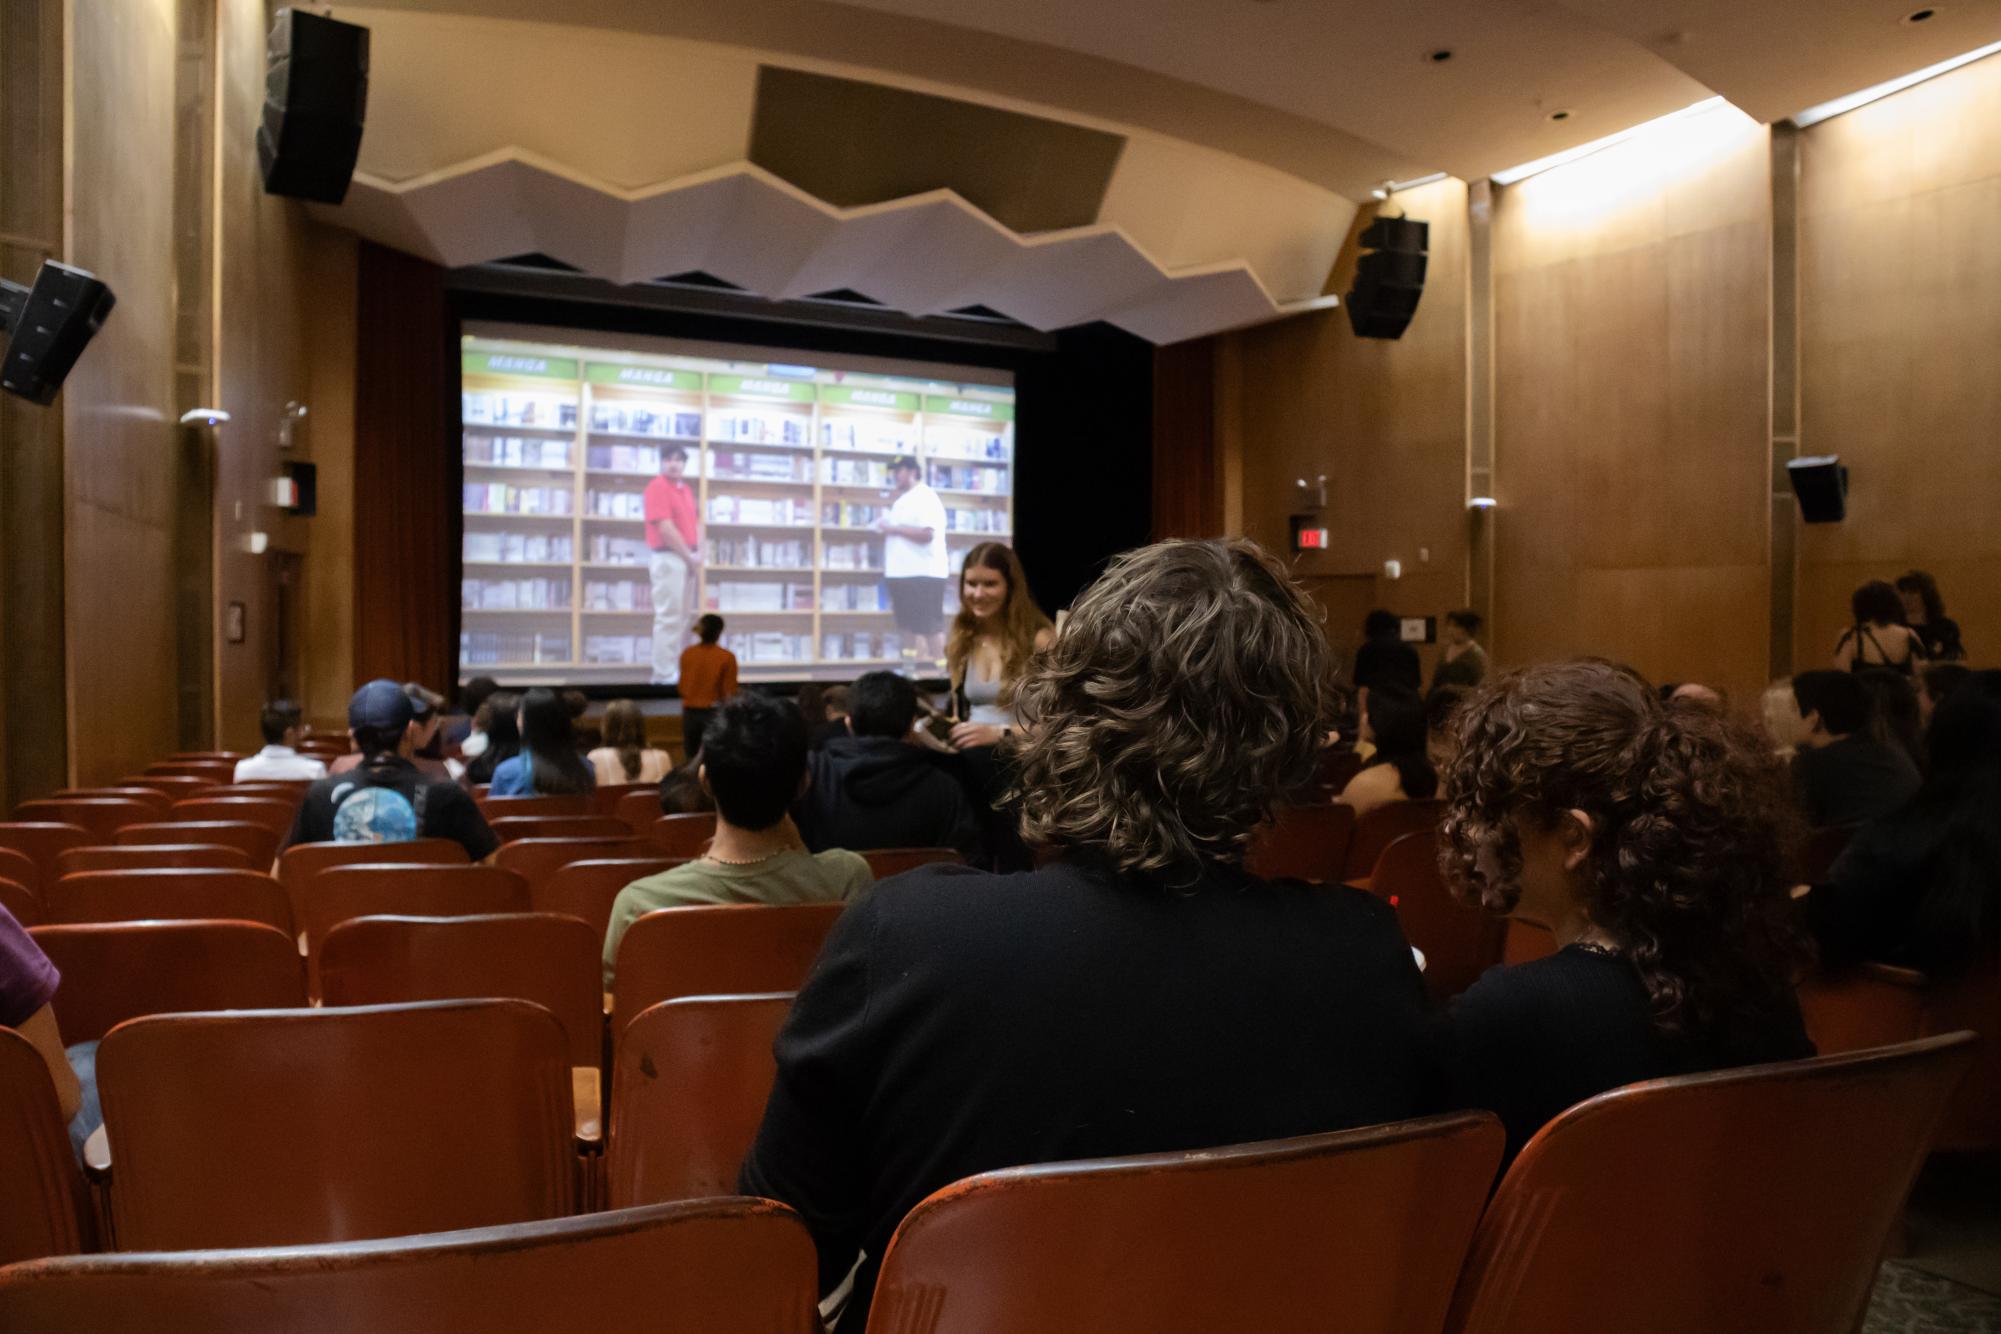 学生电影突出展示悲伤、气候危机和文化遗产——第15届德克萨斯联盟电影节的亮点